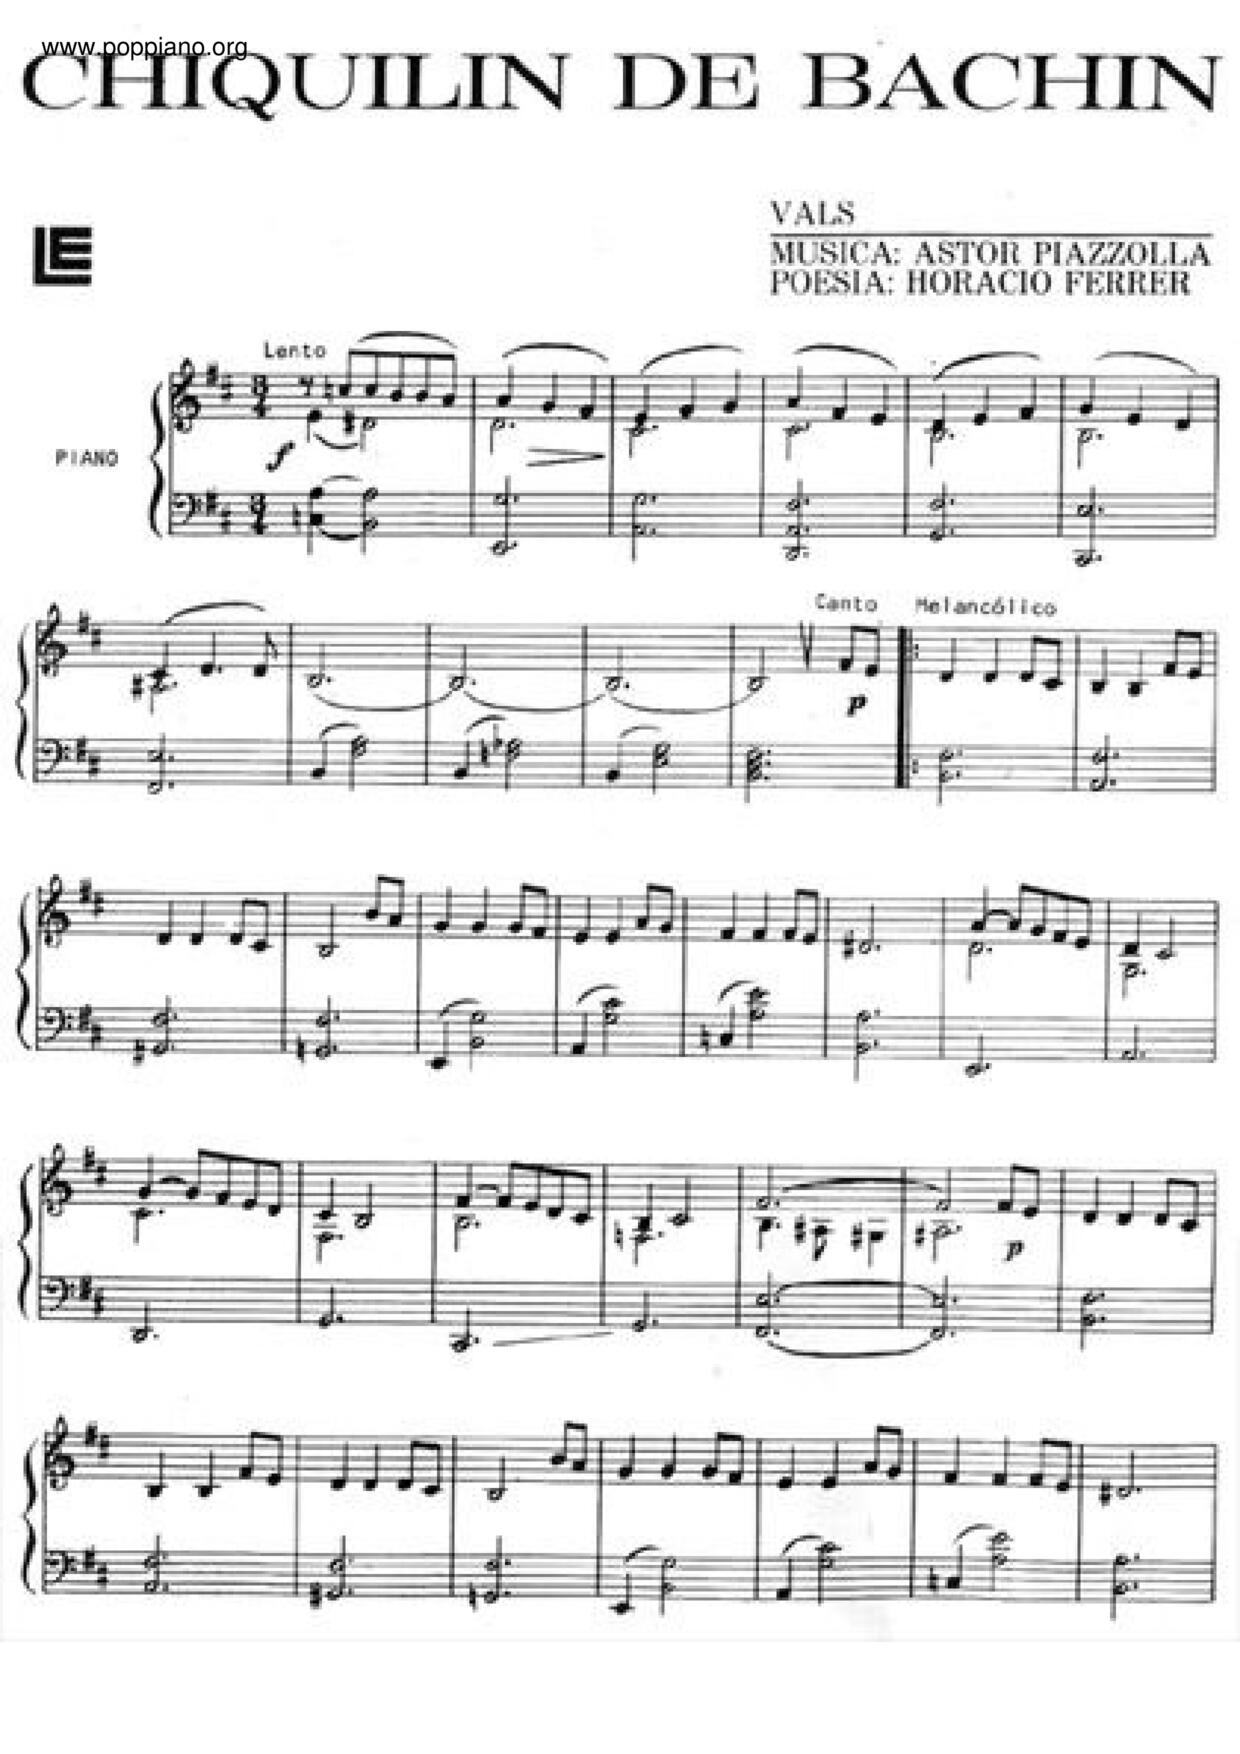 Chiquilin De Bachinピアノ譜